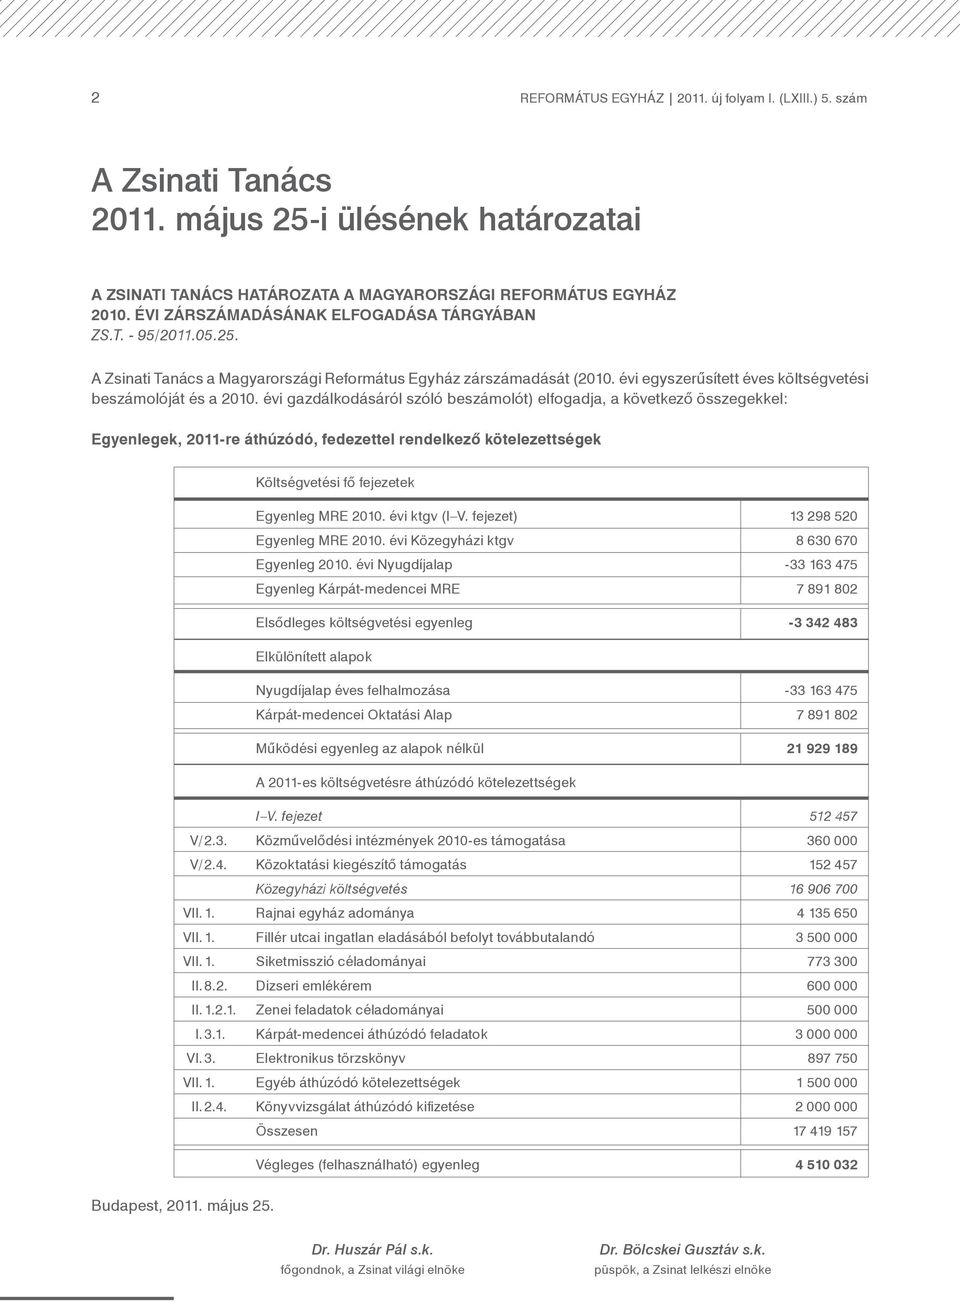 évi gazdálkodásáról szóló beszámolót) elfogadja, a következő összegekkel: Egyenlegek, 2011-re áthúzódó, fedezettel rendelkező kötelezettségek Költségvetési fő fejezetek Egyenleg MRE 2010.